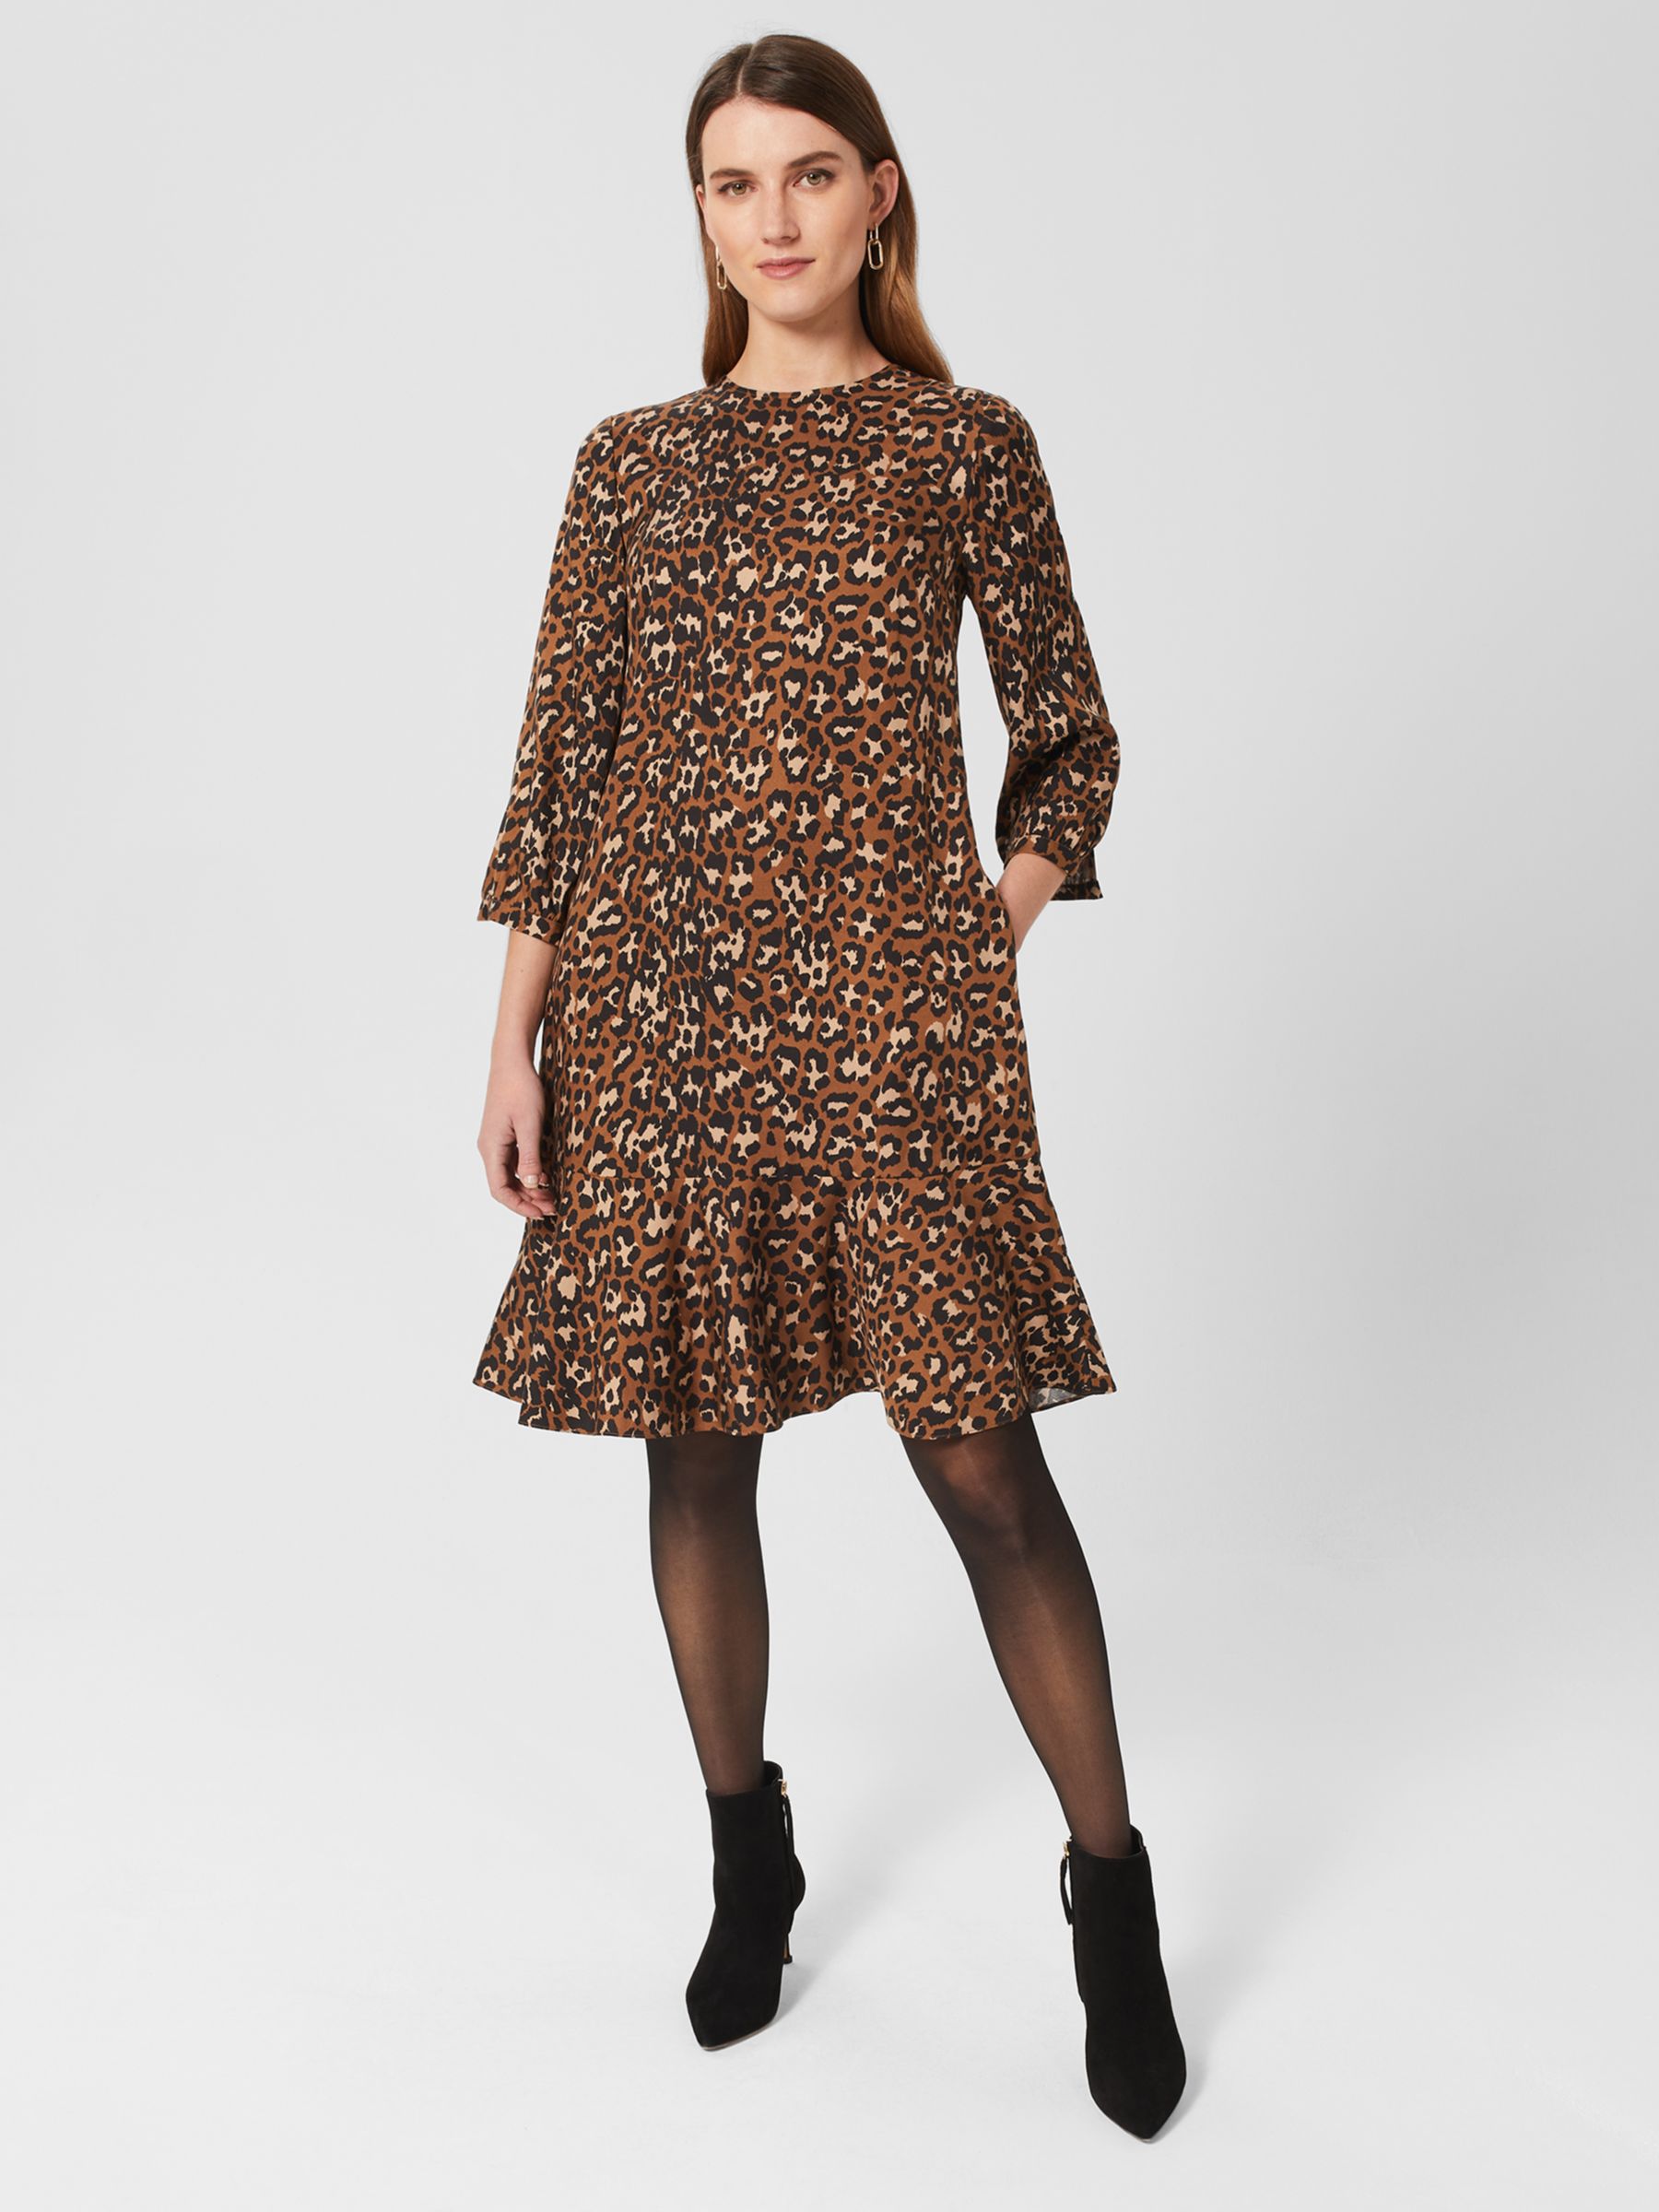 Hobbs Prim Leopard Print Dress, Brown/Multi at John Lewis & Partners